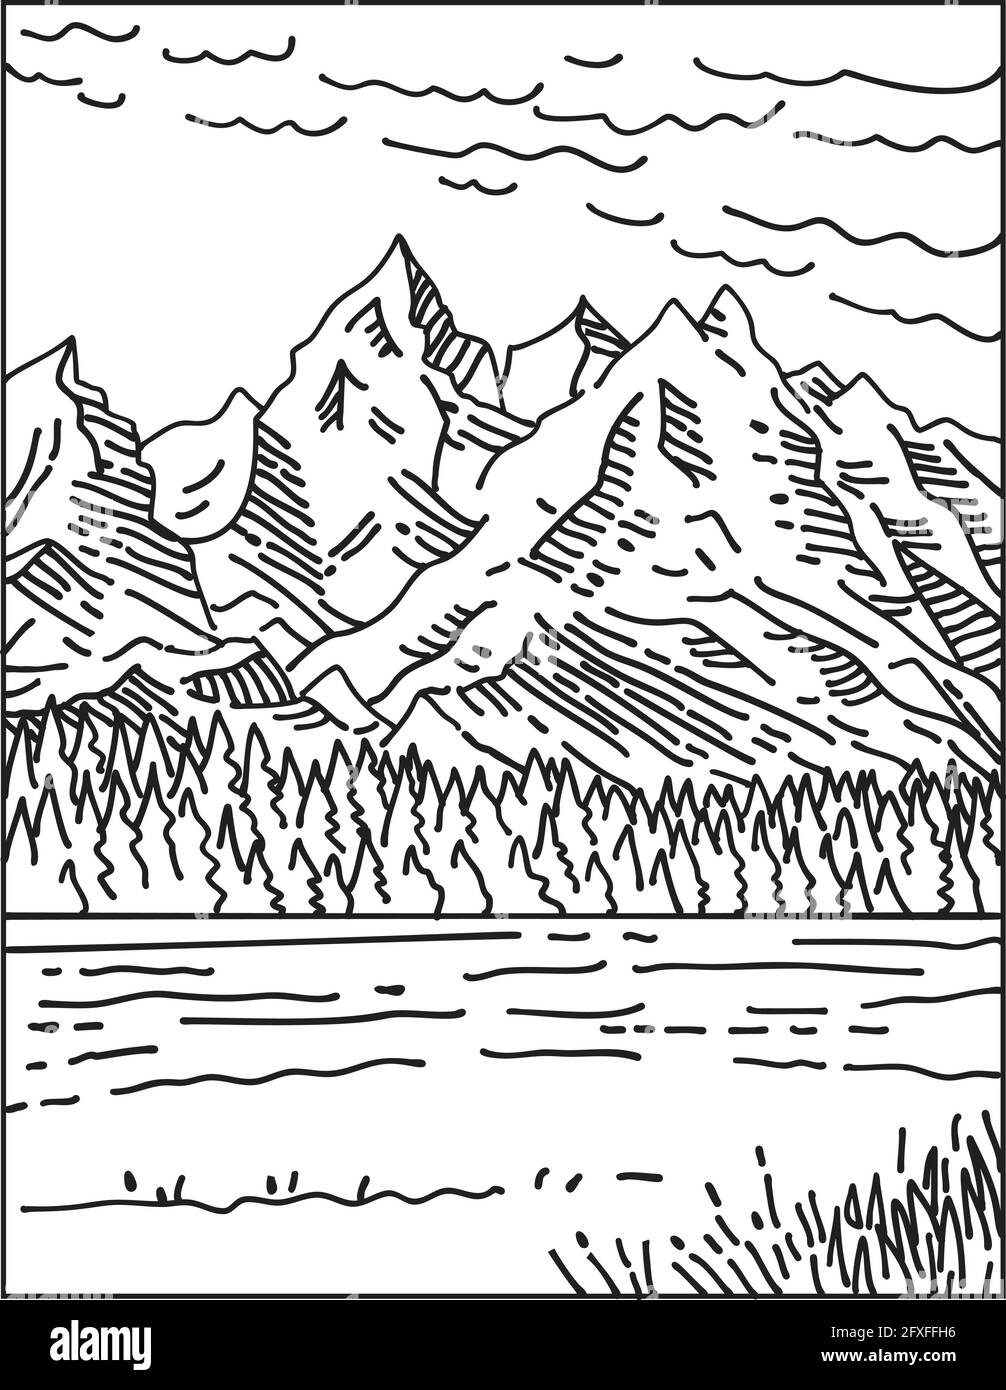 Monolinie Illustration der Teton Range im Grand Teton National Park im Nordwesten von Wyoming, USA in Retro schwarz-weiß Mo Stock Vektor